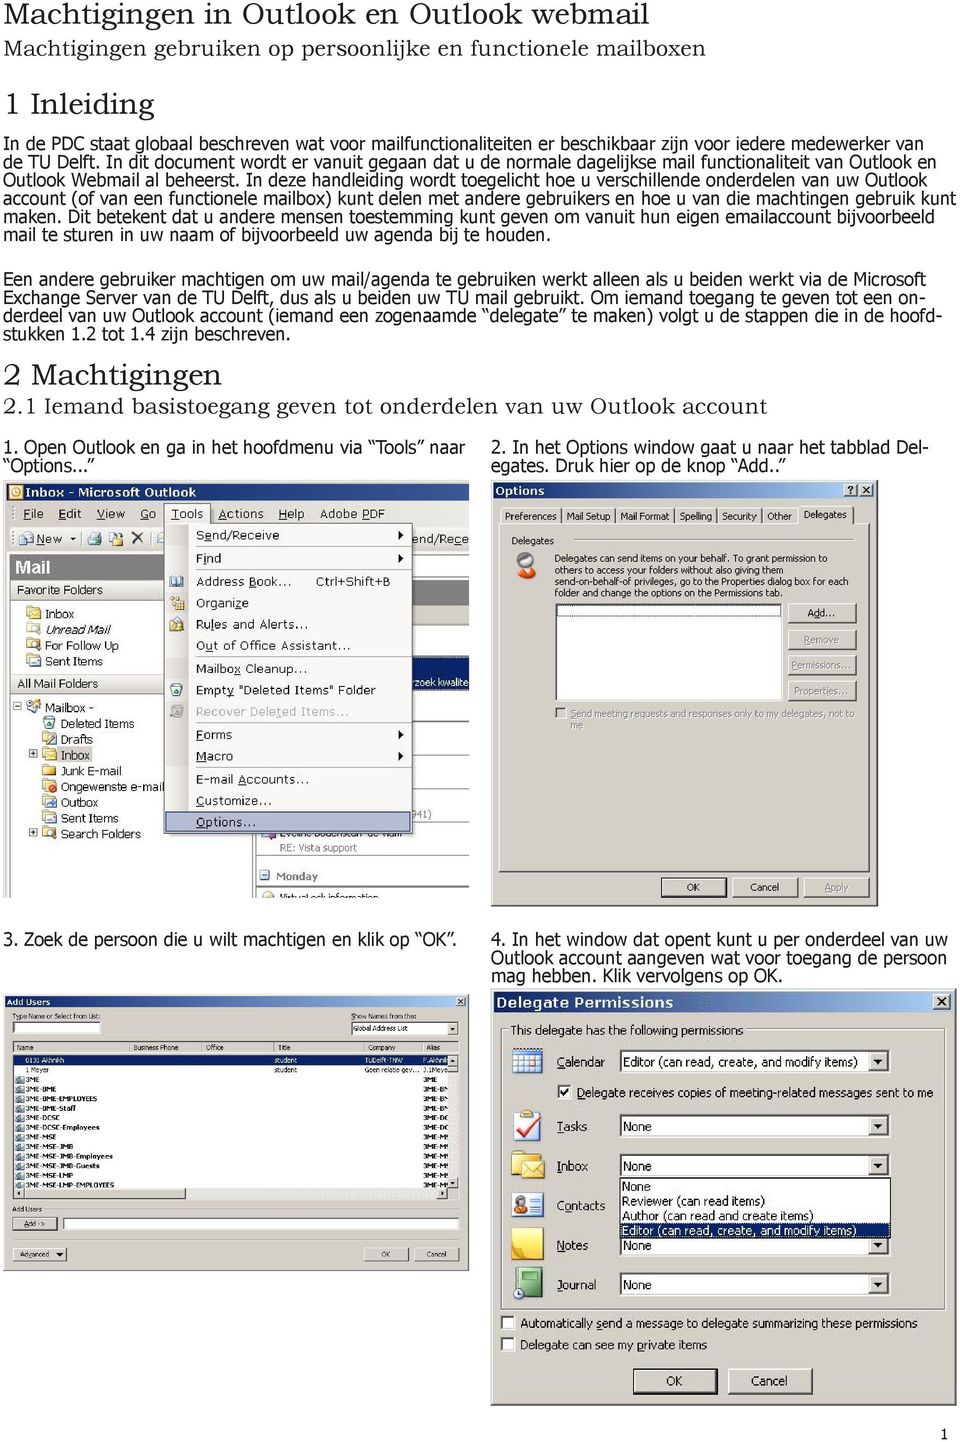 In deze handleiding wordt toegelicht hoe u verschillende onderdelen van uw Outlook account (of van een functionele mailbox) kunt delen met andere gebruikers en hoe u van die machtingen gebruik kunt